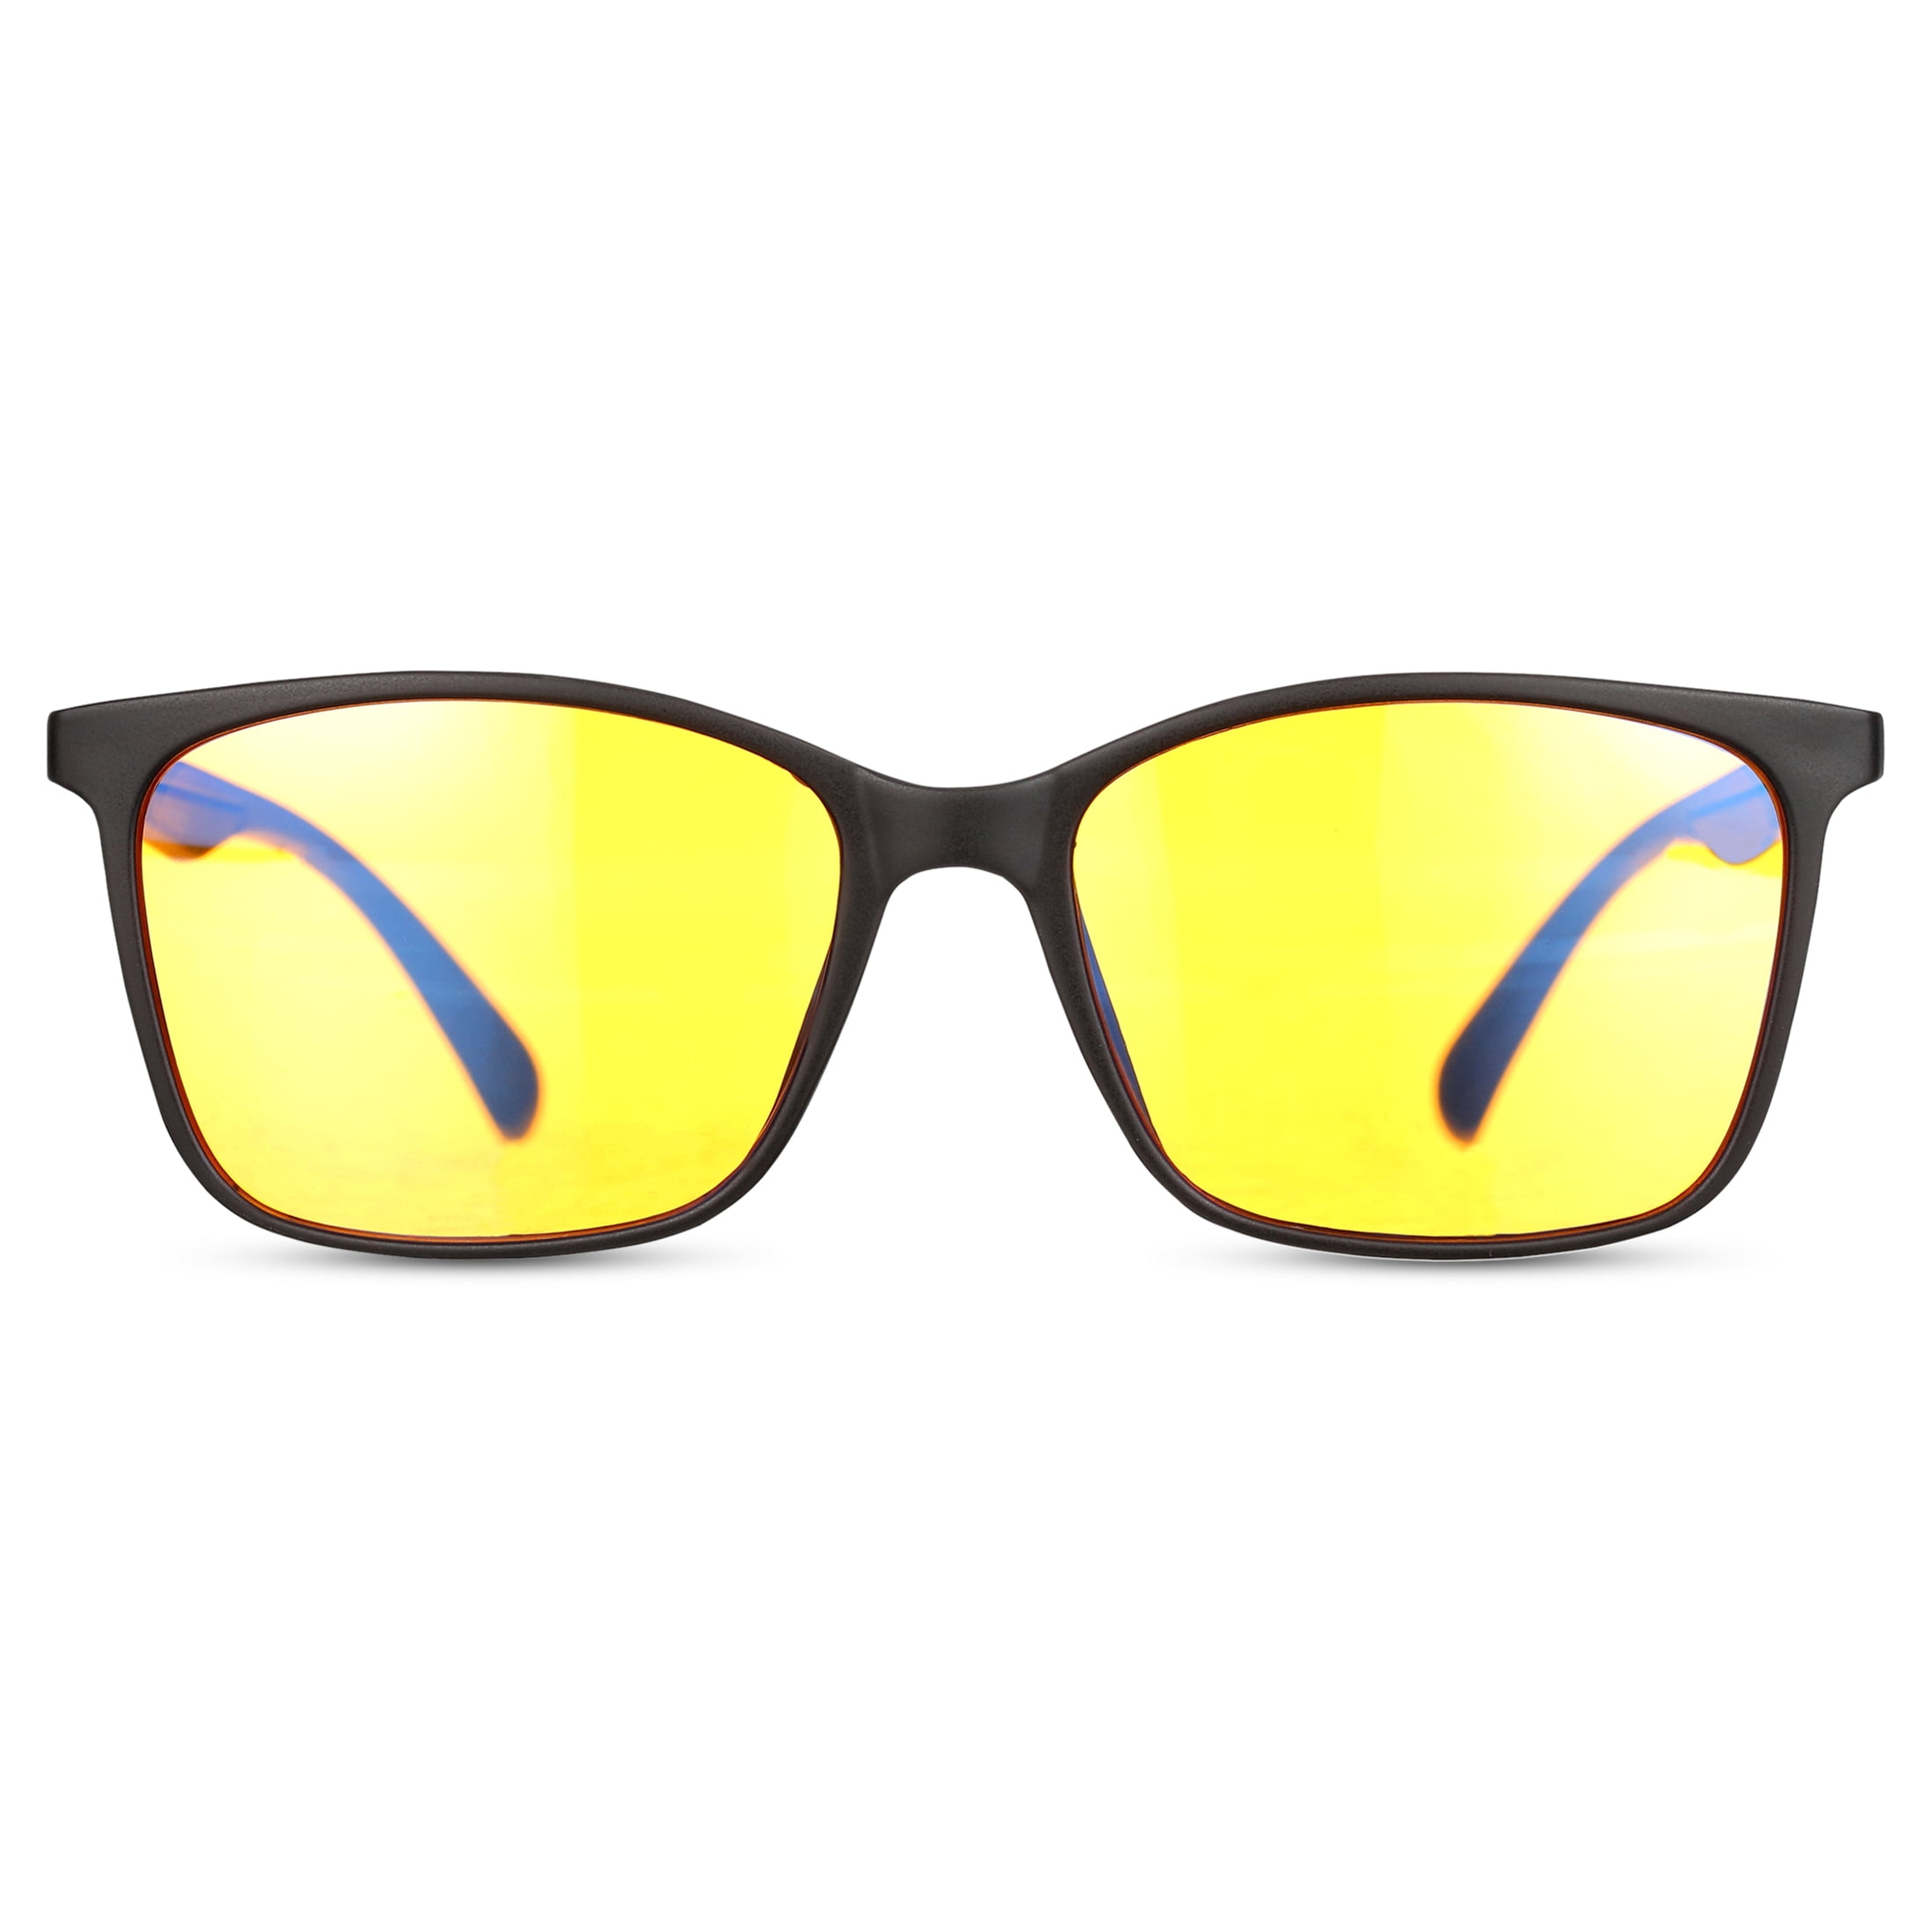  Bloomoak-Blue Light Blocking Glasses-Amber Gaming Glasses-Anti  Glare for Better Sleep for Screens, Games, TVs, Mobile Phones (Yellow - 65%  - Black Frame) : Health & Household